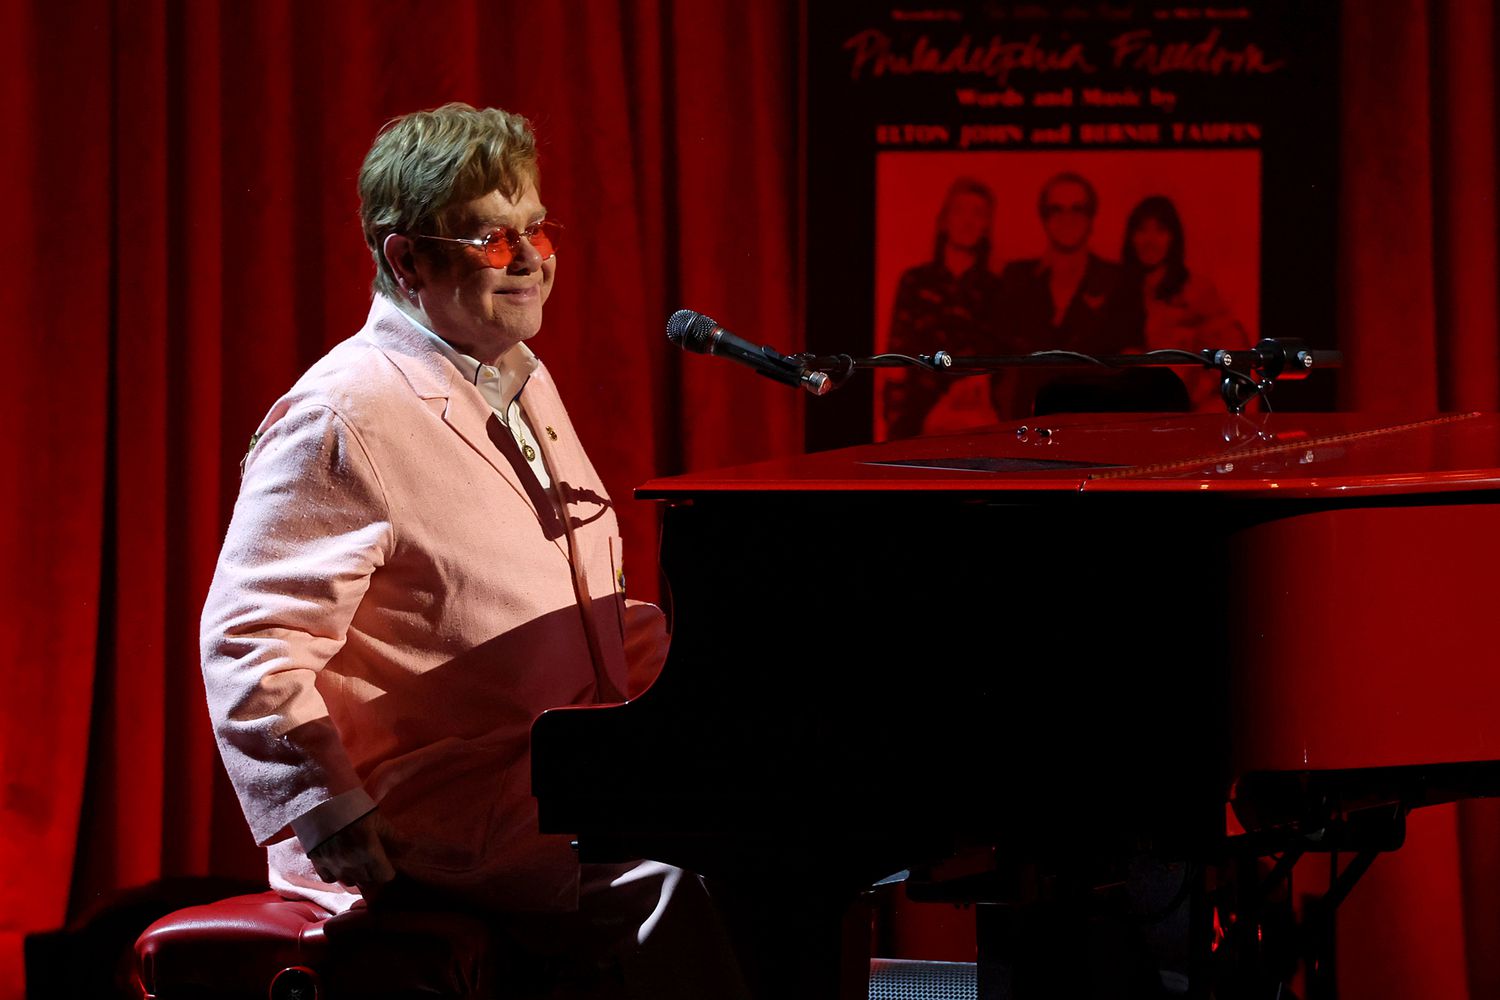 Honoree Elton John